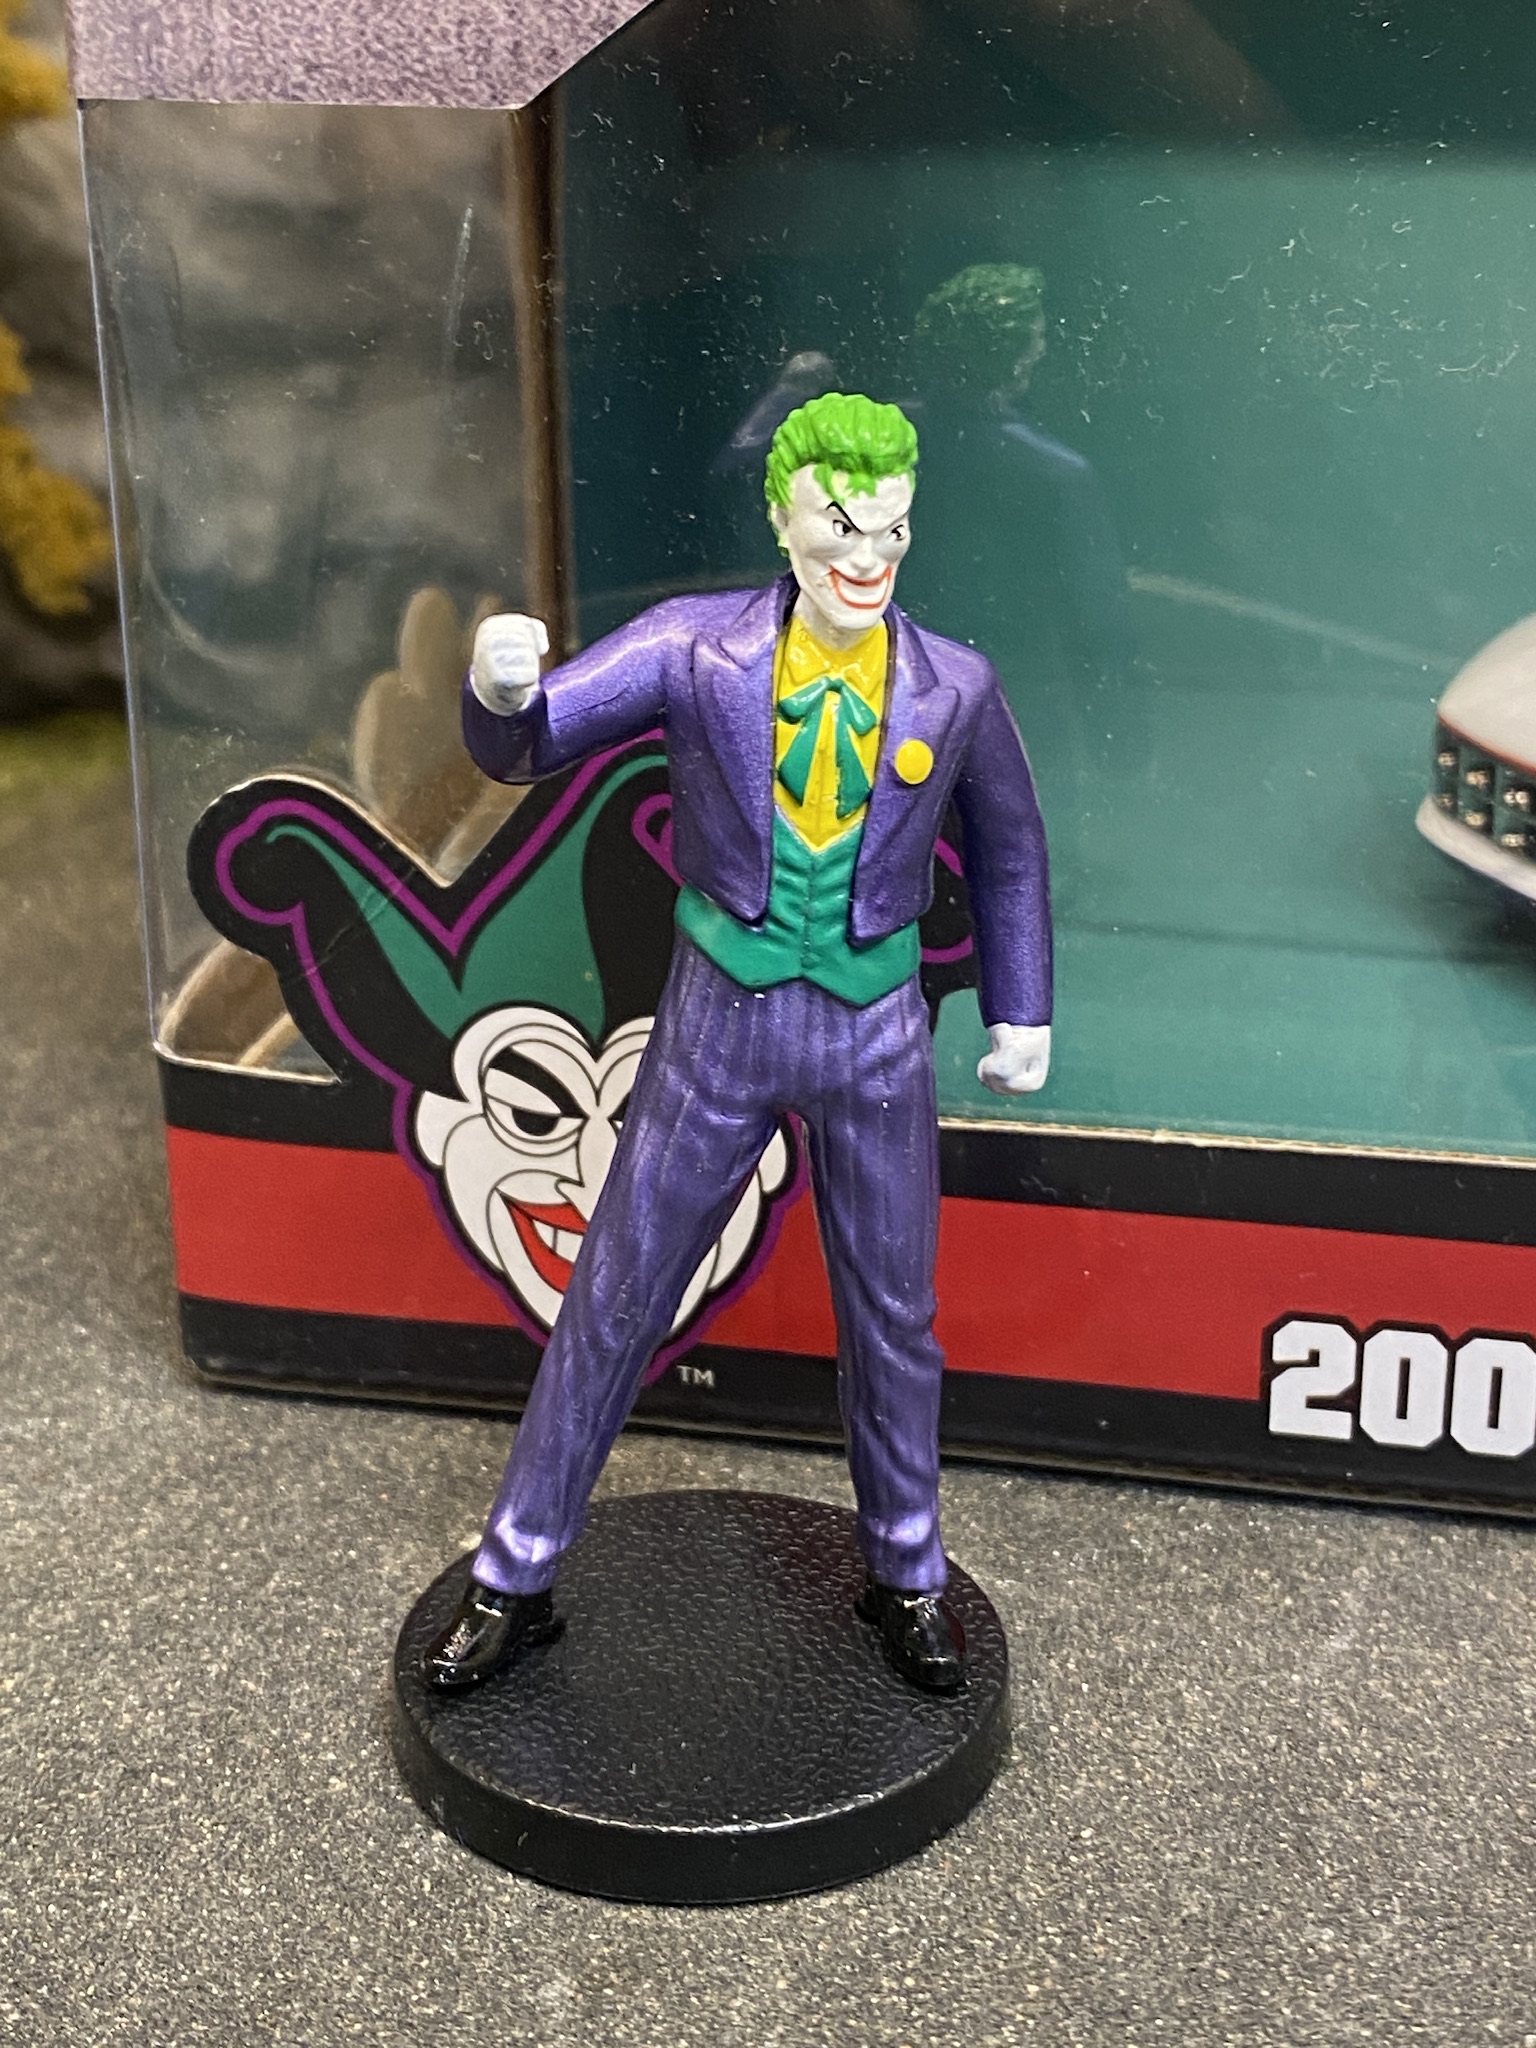 Skala 1/24: DC Comics: Chevy Corvette Stingray 09', The Joker fr Jada